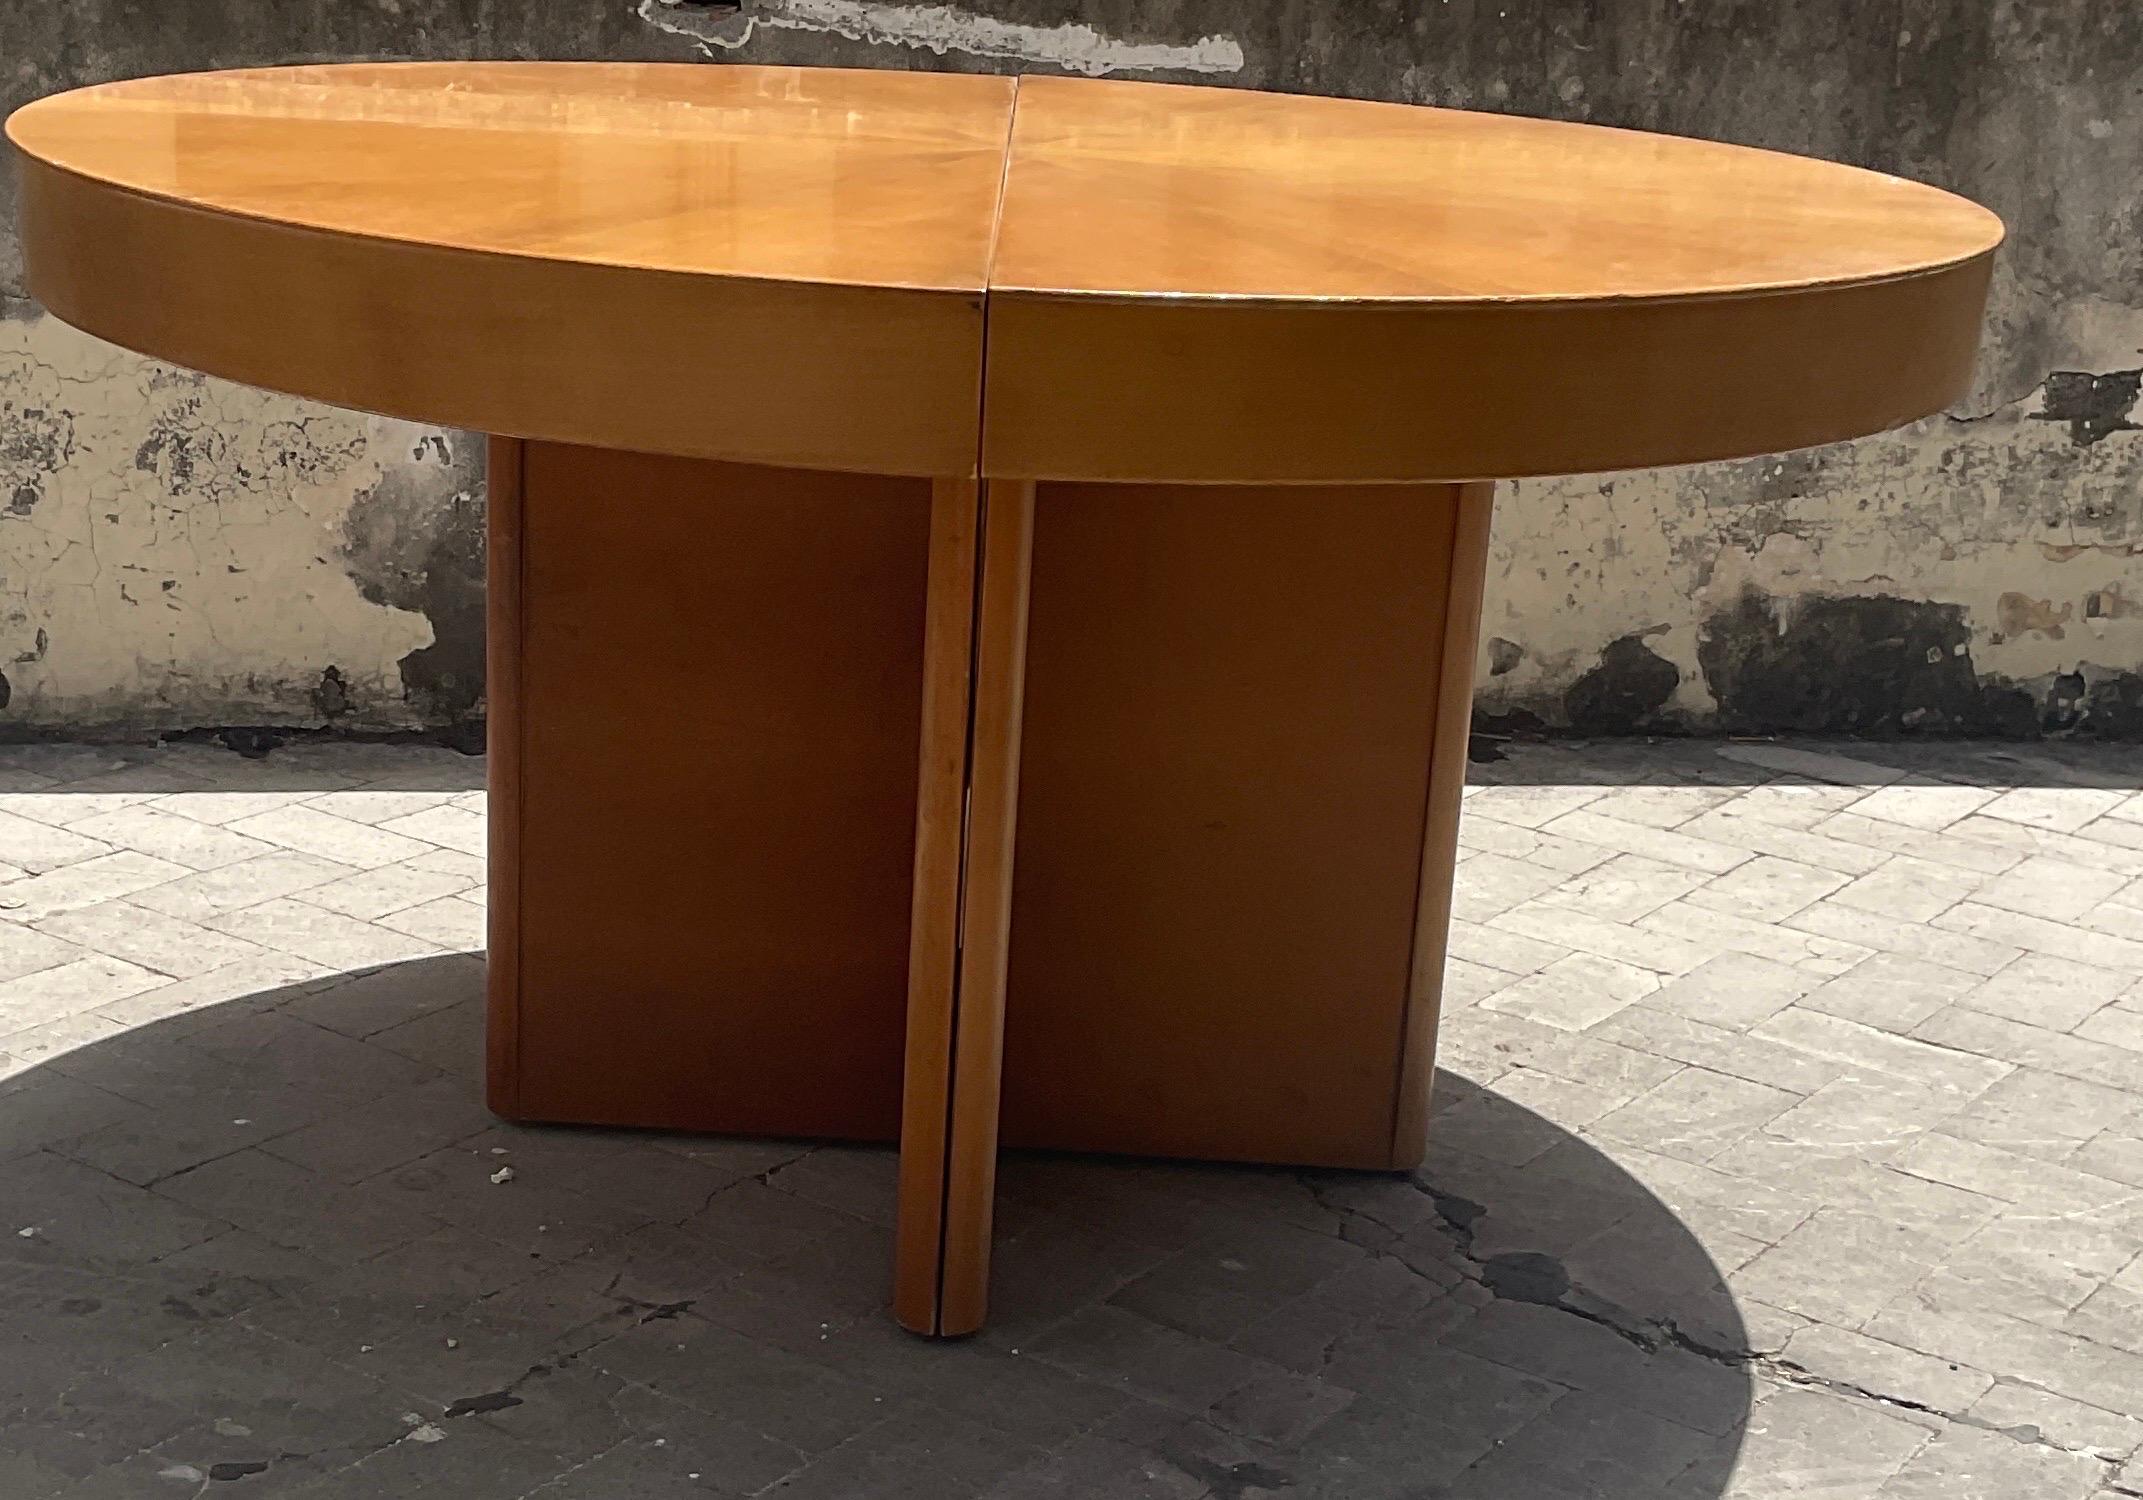 Italian Fiorenza extendible round table in walnut by Tito Agnoli for Molteni, 70s